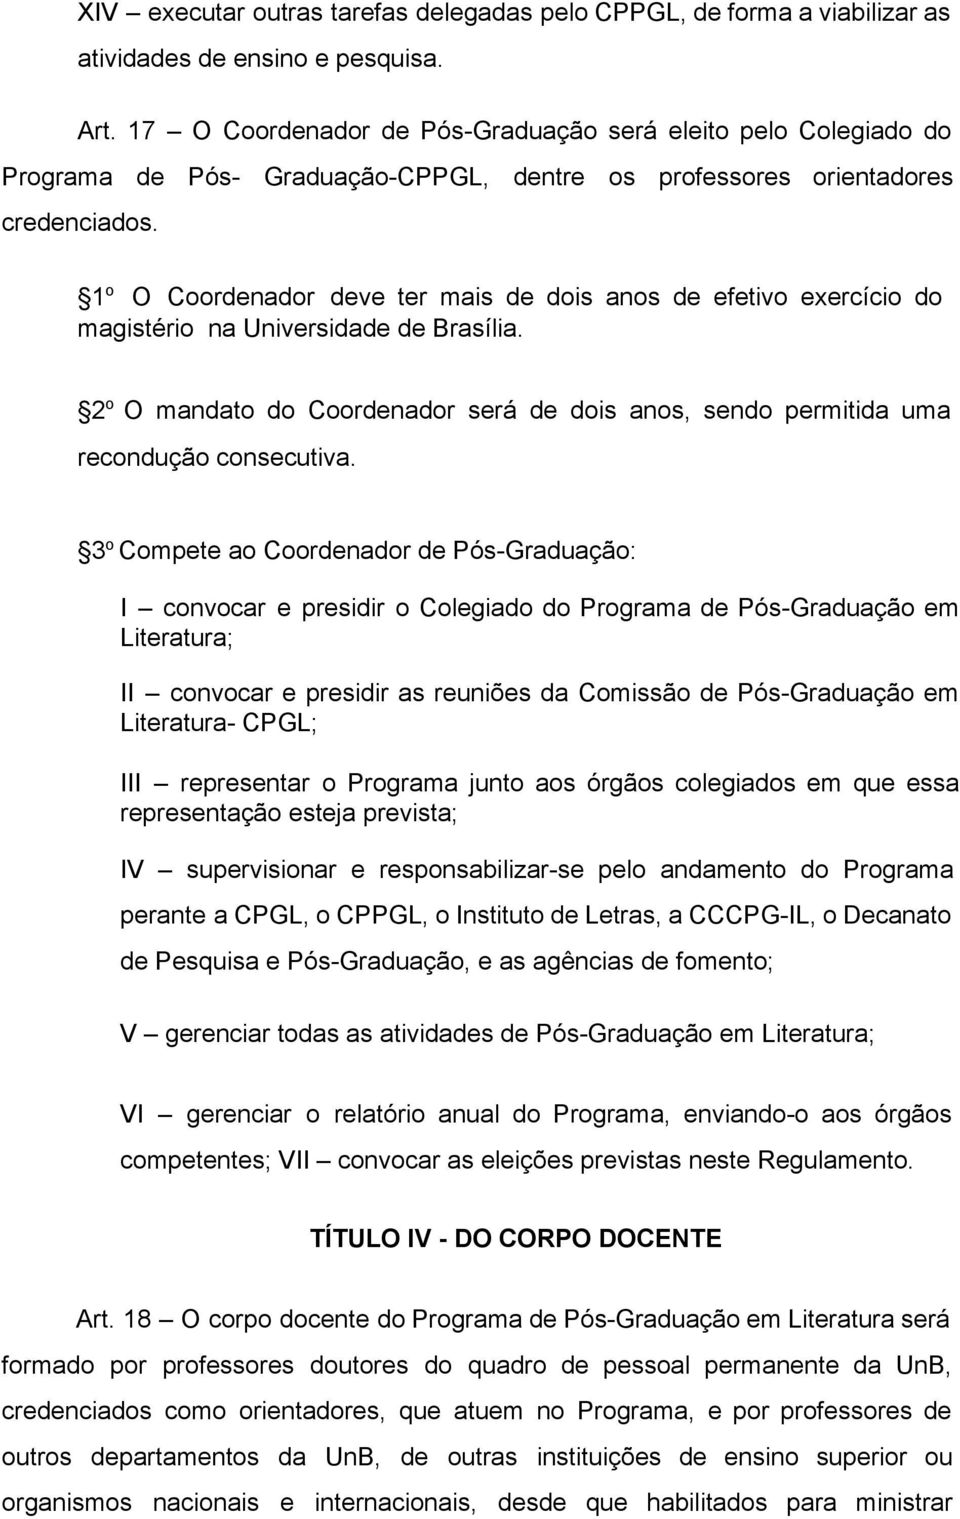 1 o O Coordenador deve ter mais de dois anos de efetivo exercício do magistério na Universidade de Brasília. 2 o O mandato do Coordenador será de dois anos, sendo permitida uma recondução consecutiva.